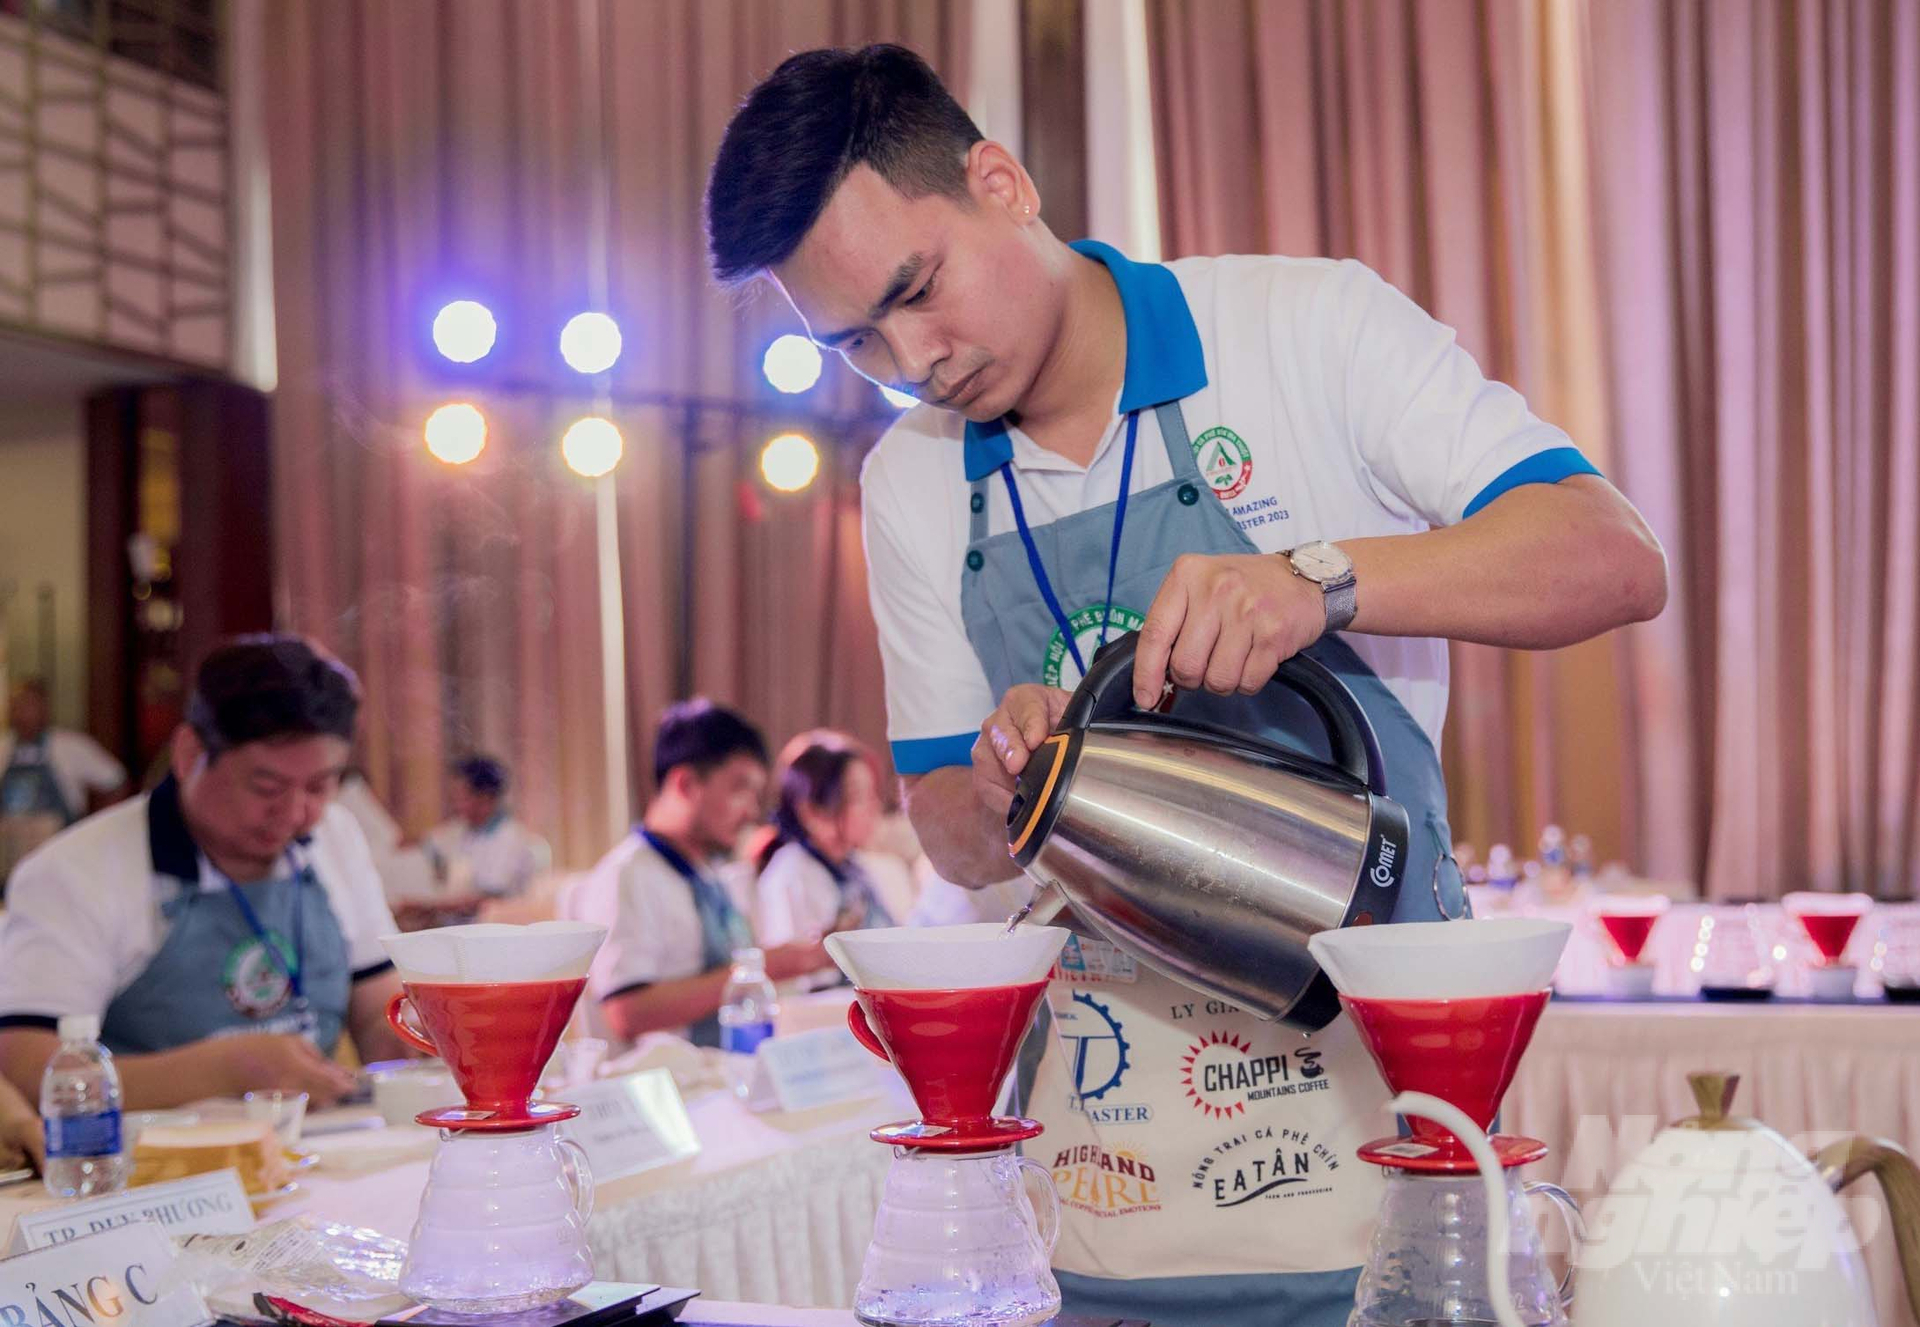 Những cuộc thi cà phê cũng thường xuyên được các doanh nghiệp tổ chức nhằm đánh giá năng lực sản xuất, chế biến của các đơn vị. Ảnh: Minh Quý.